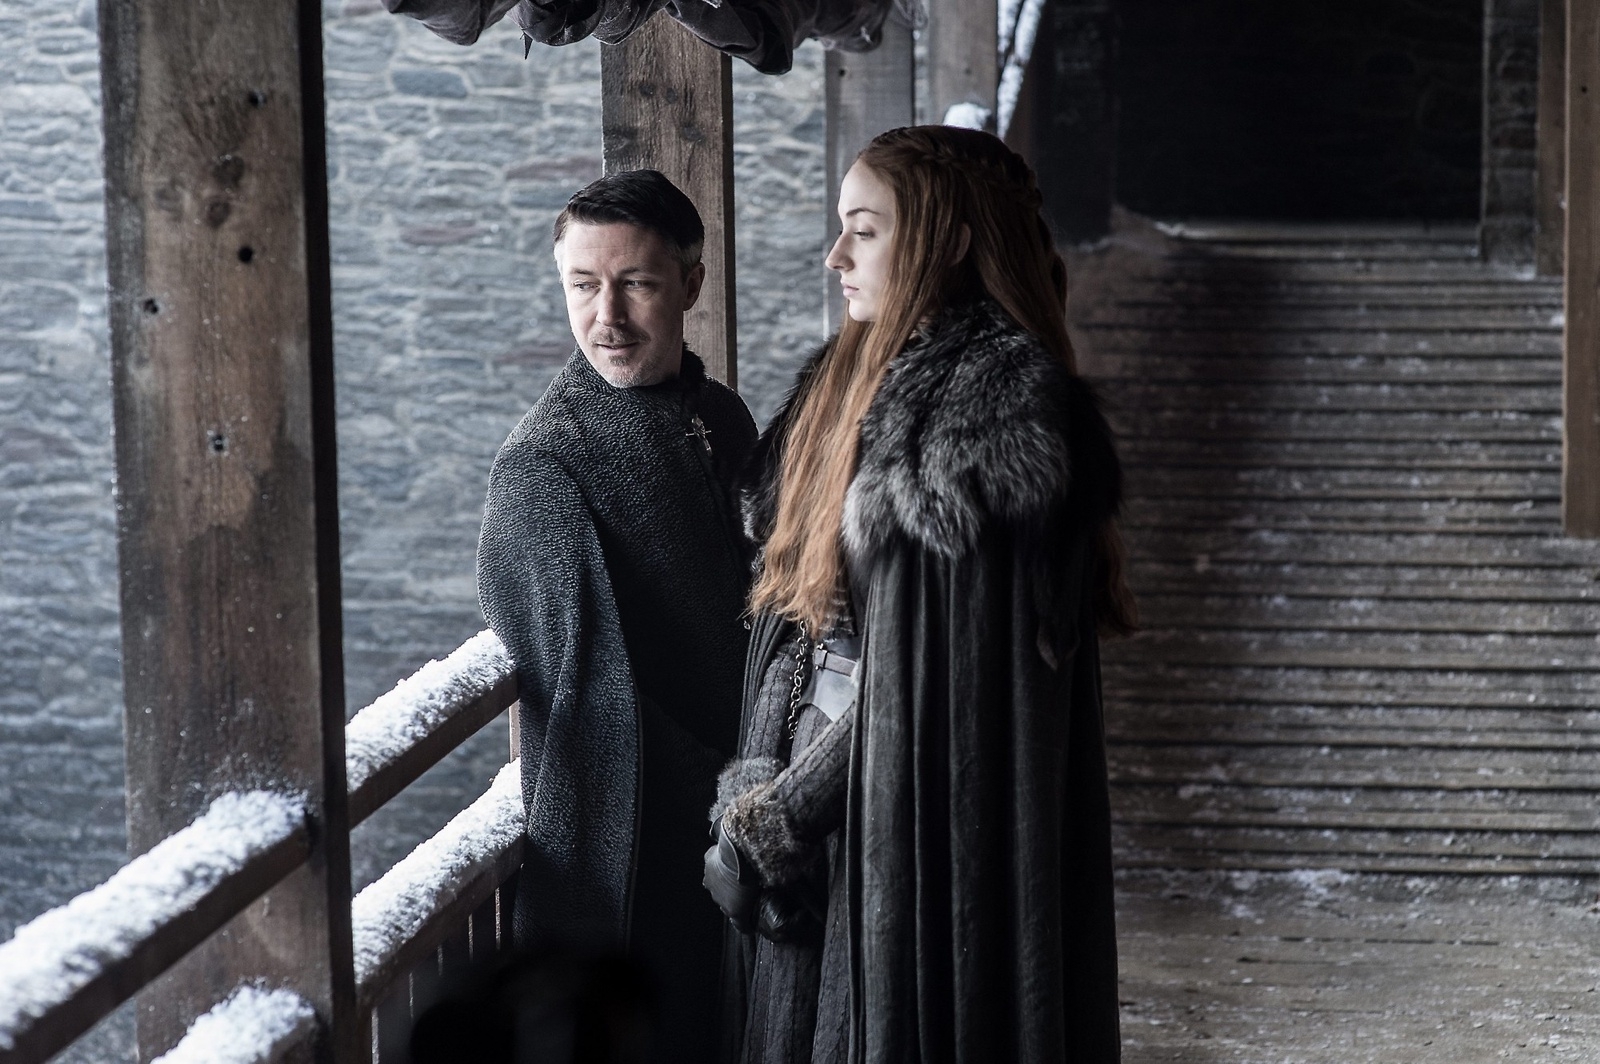 Bild 1: Aidan Gillen och Sophie Turner som Petyr ”Littlefinger” Baelish och Sansa Stark. Bild 2: Kit Harington som Jon Snow. Foto: HBO